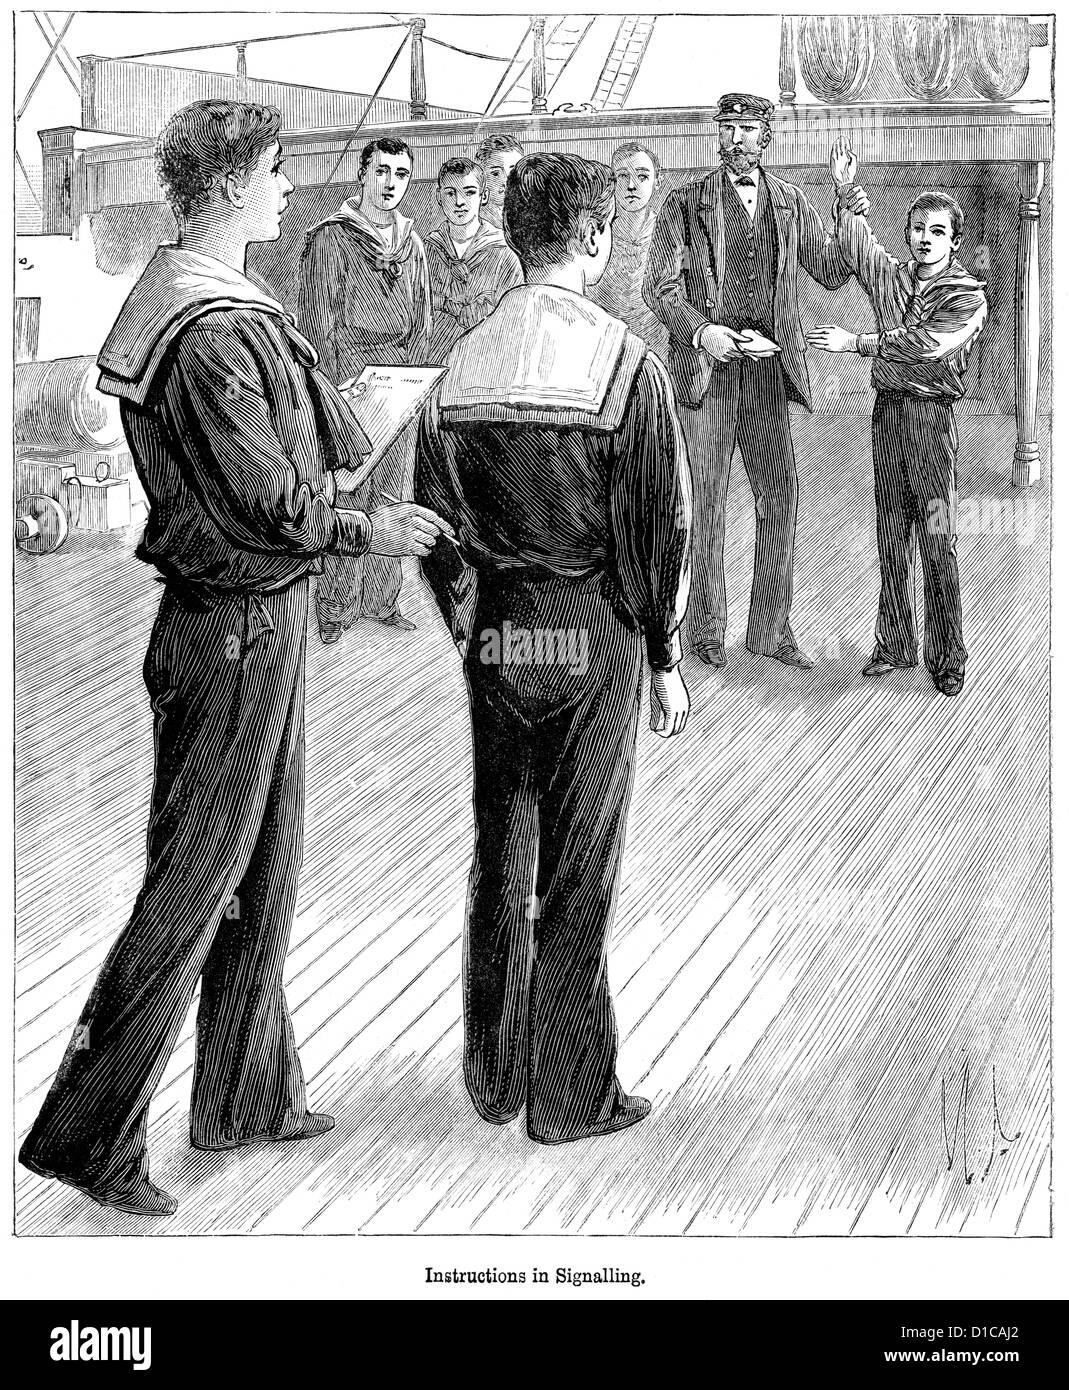 La gravure de l'époque victorienne de cadets de la marine, de signalisation d'apprentissage 1897 Banque D'Images